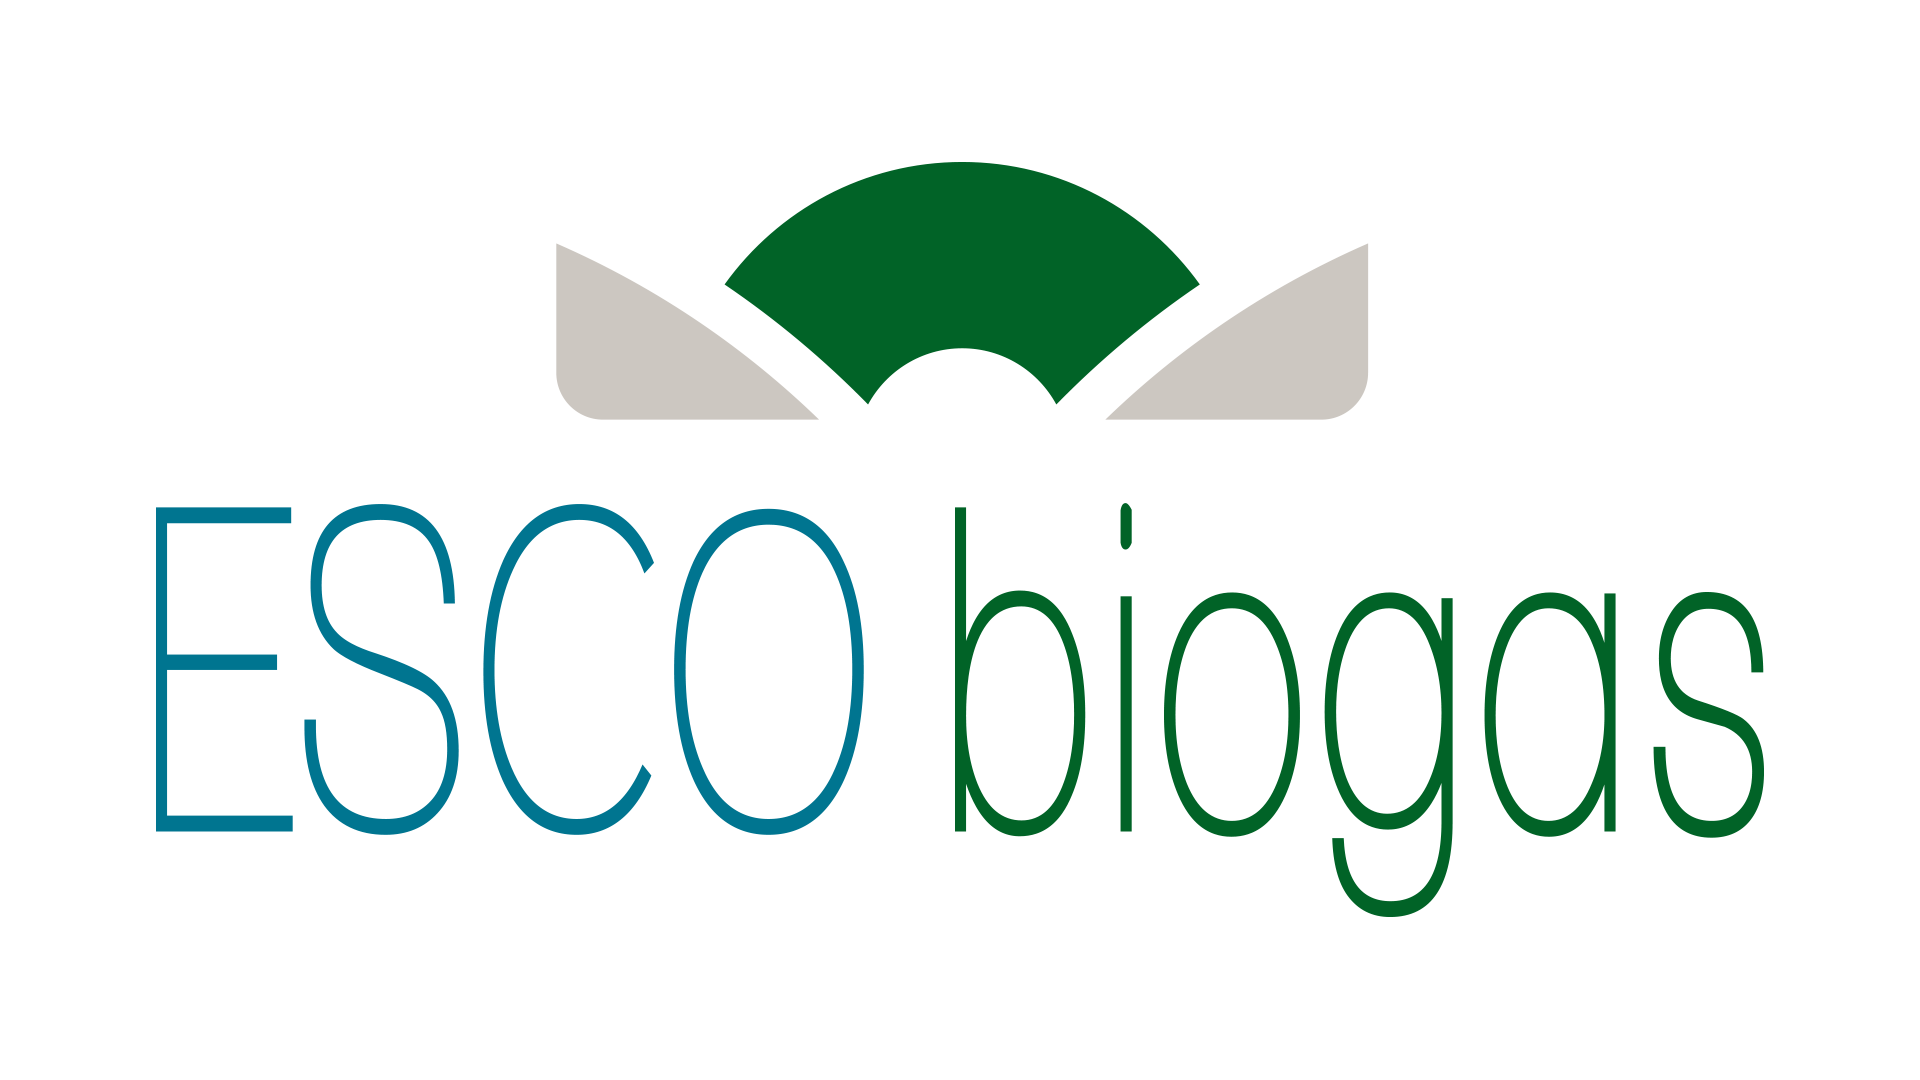 escobiogas_logo